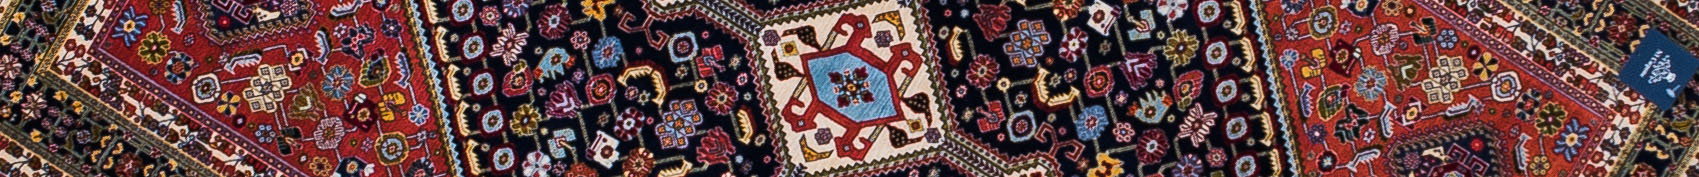 Qashqai Persian Carpet Rug N1Carpet Canada Montreal Tapis Persan 4500